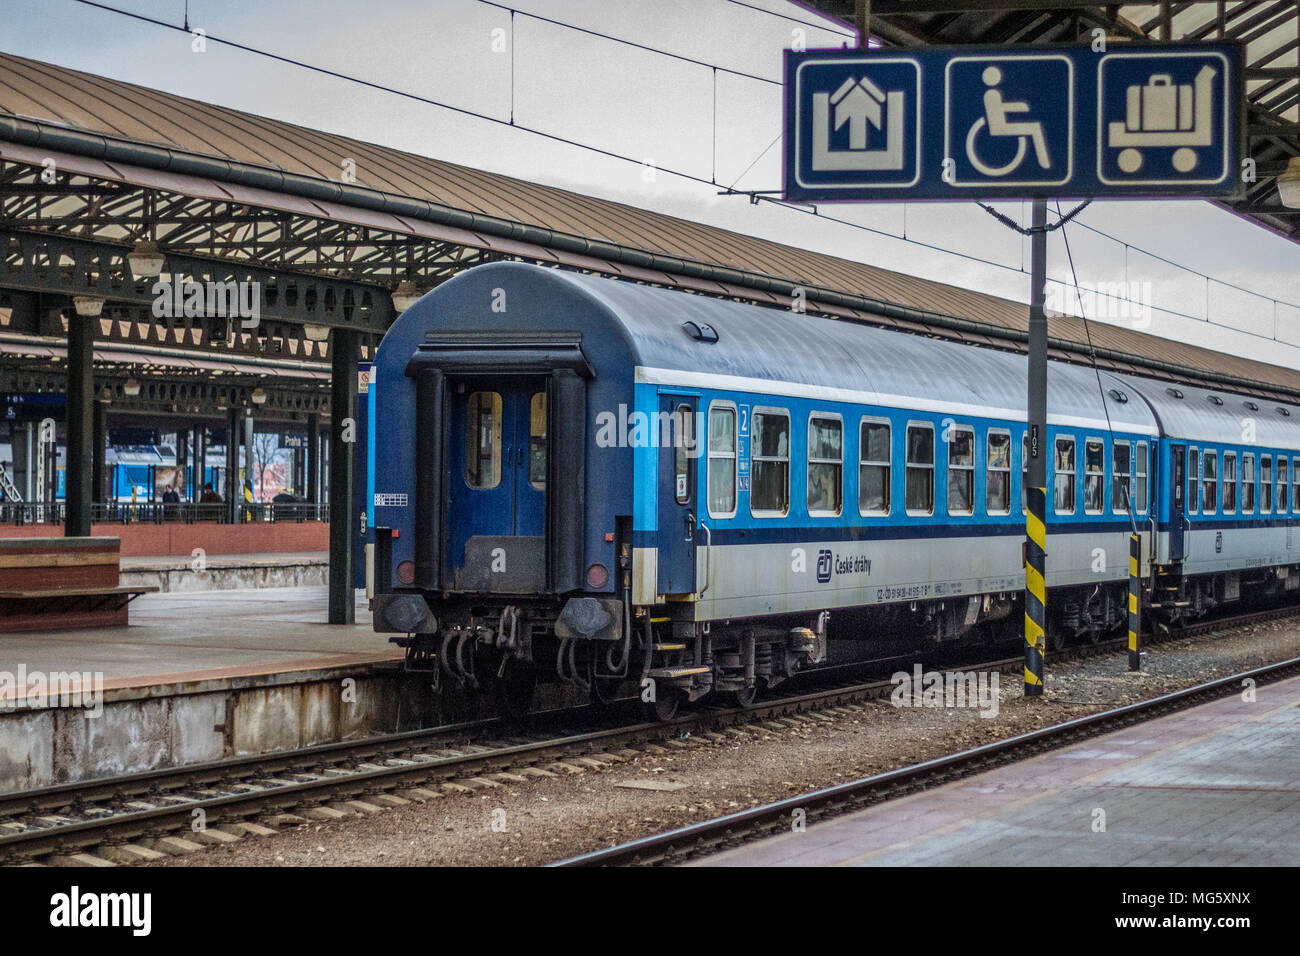 Schnellzug der Tschechischen Bahn im Prager Hauptbahnhof. Die Tage der alten Schnellzugwagen aus DDR-Produktion sind nunmehr auch in Tschechien und der Slowakei gezählt. Stock Photo